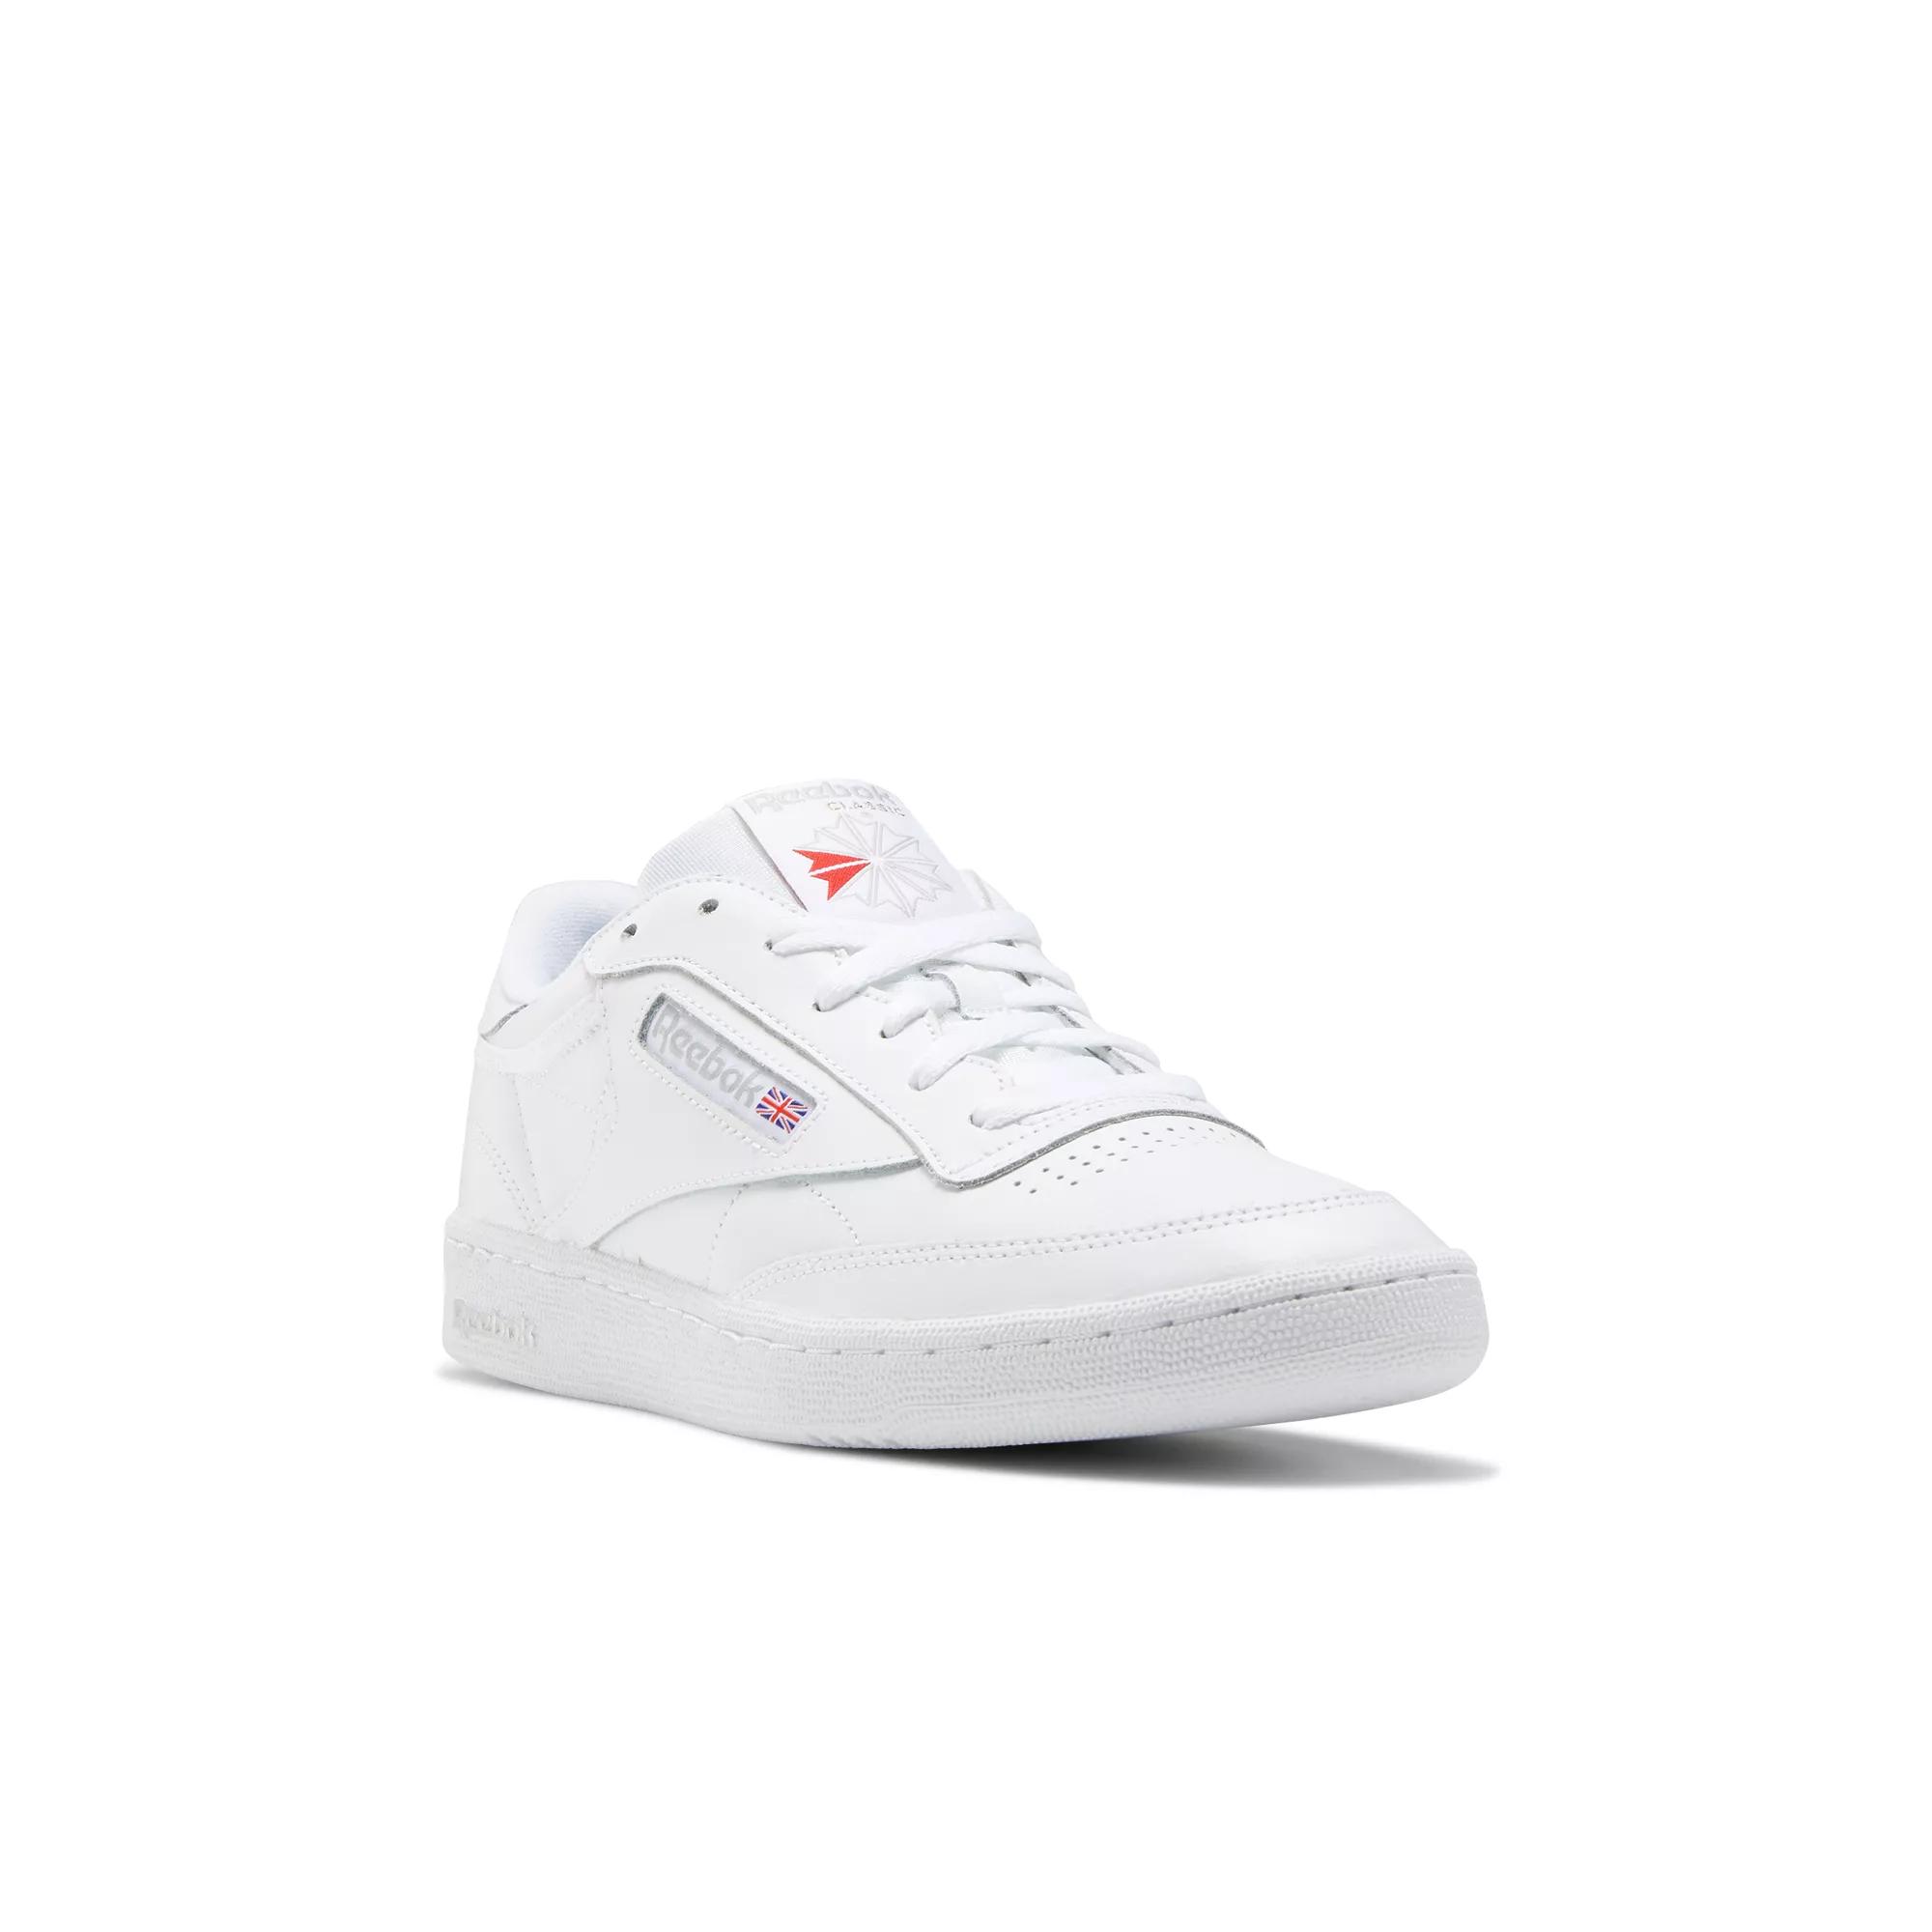 Womens Reebok Club C 85 Athletic Shoe - White / Light Gray